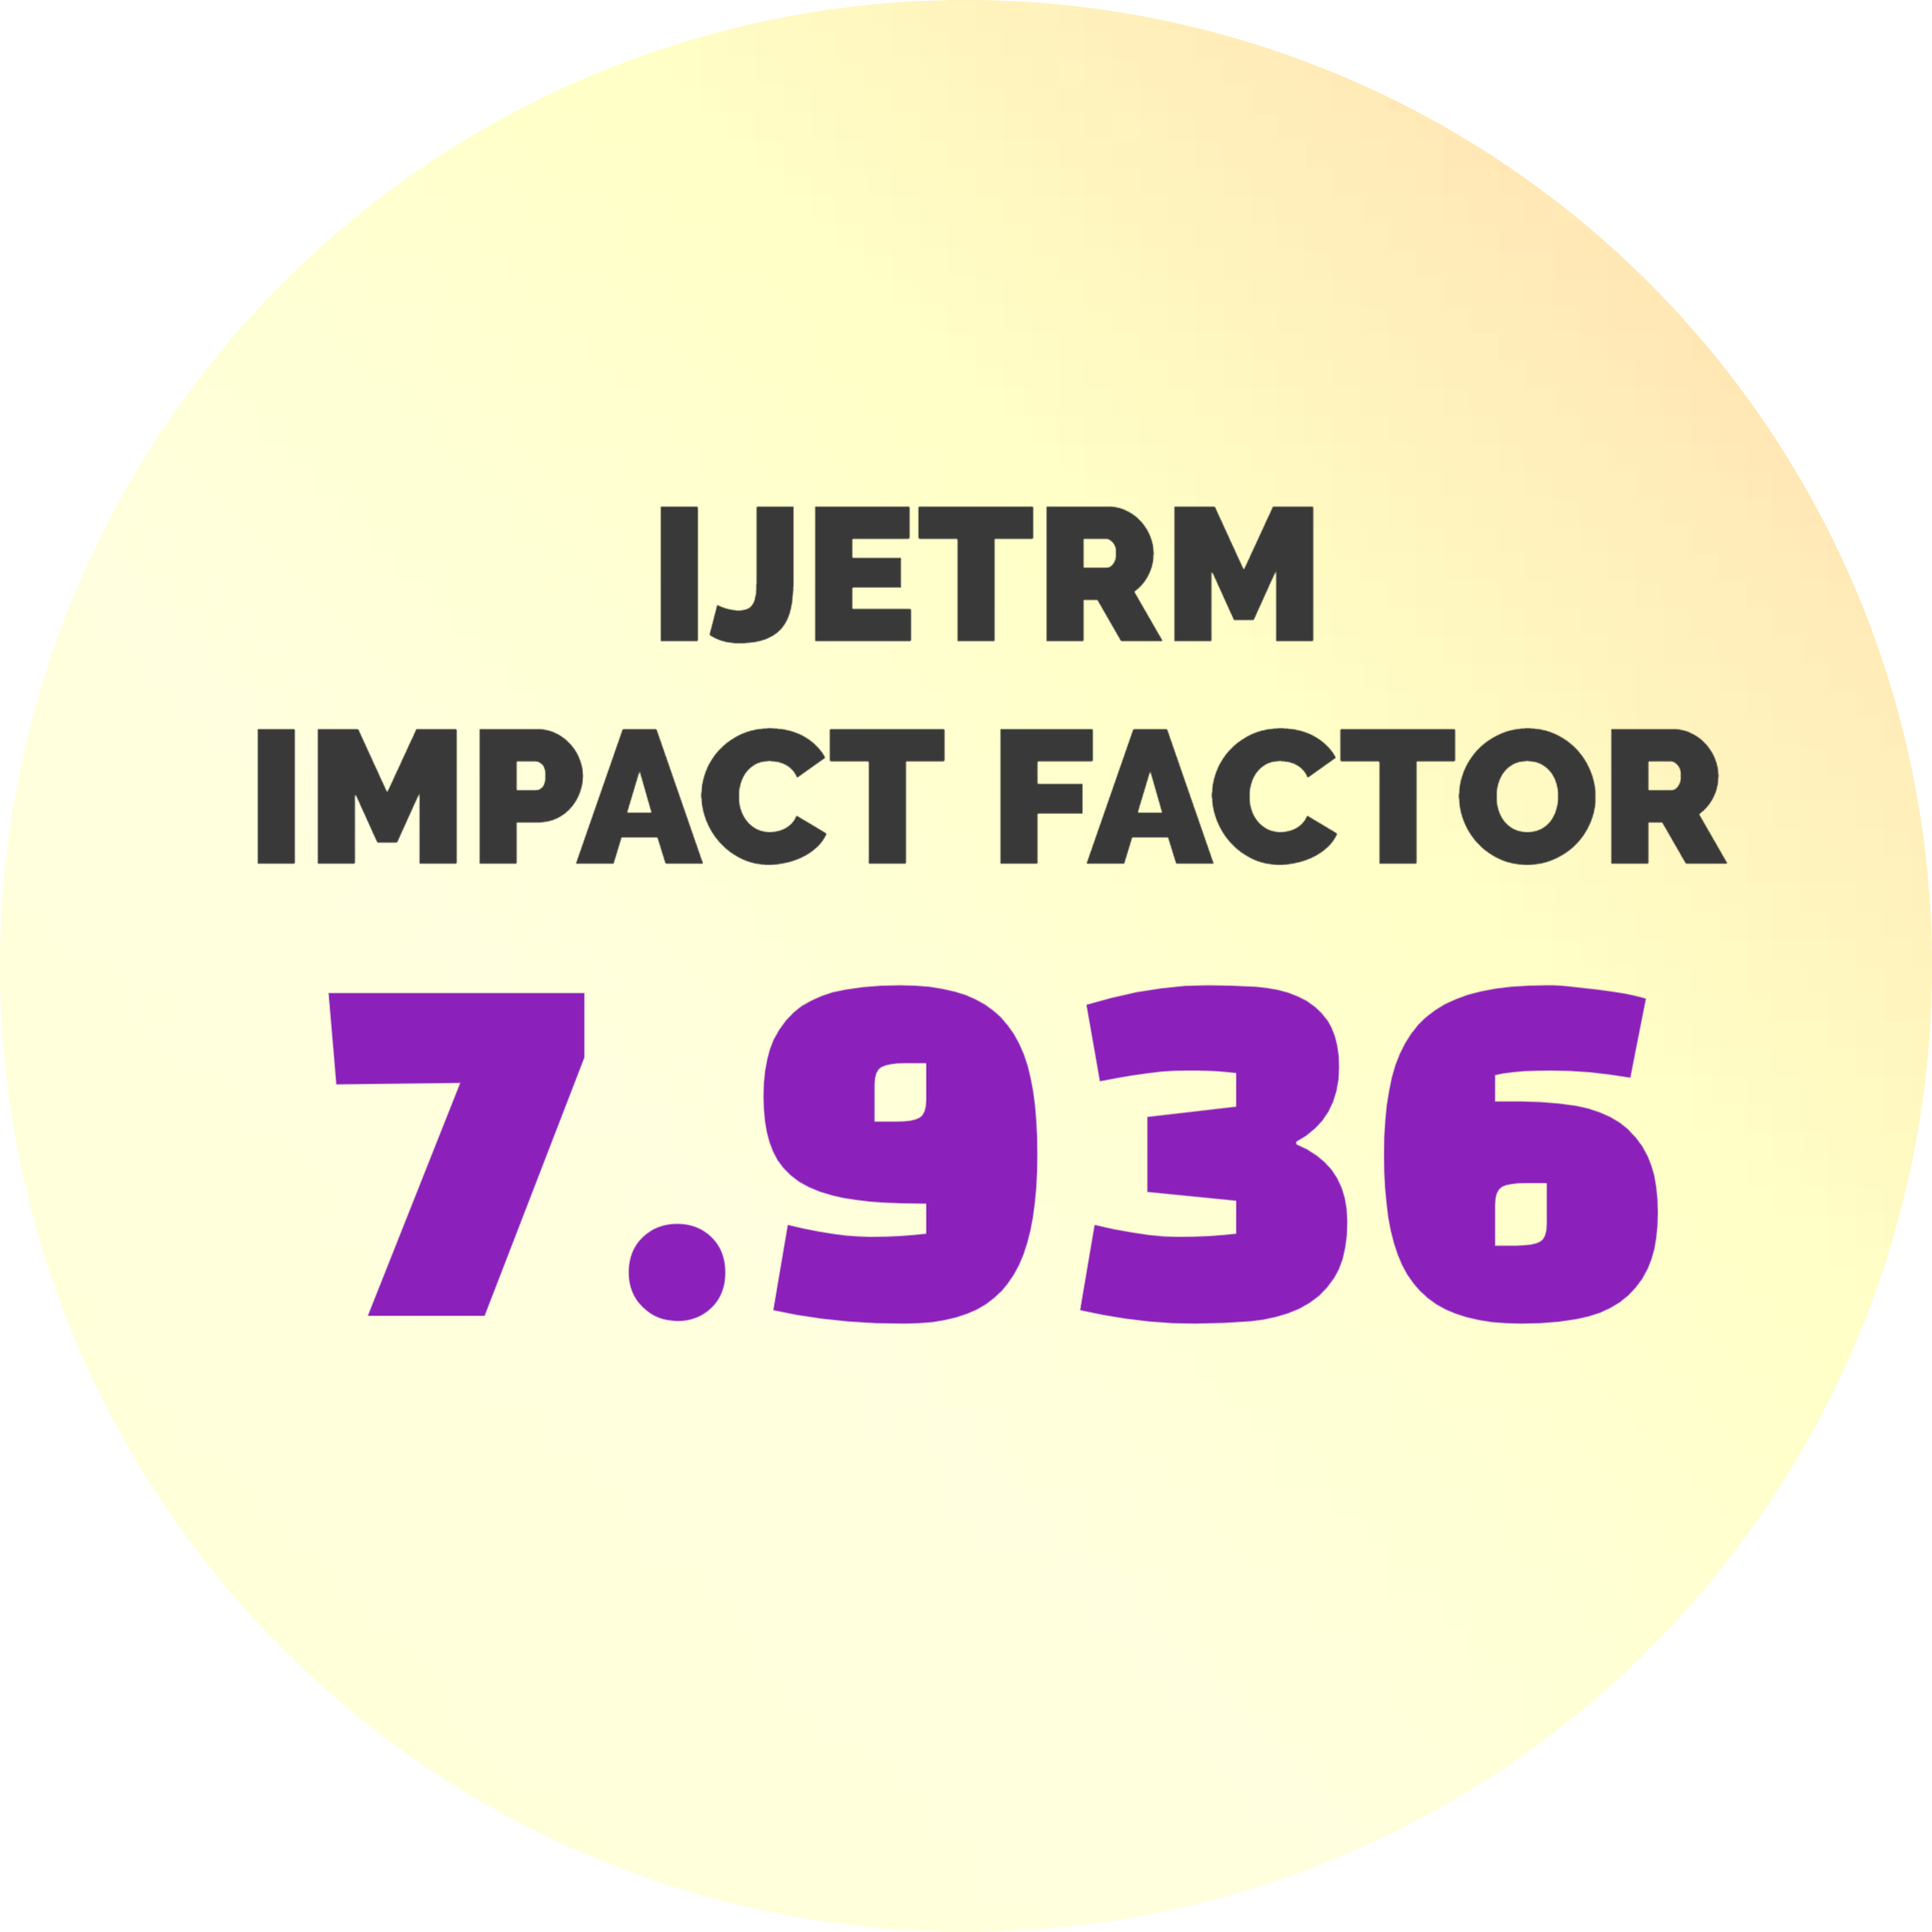 Highest Impact Factor